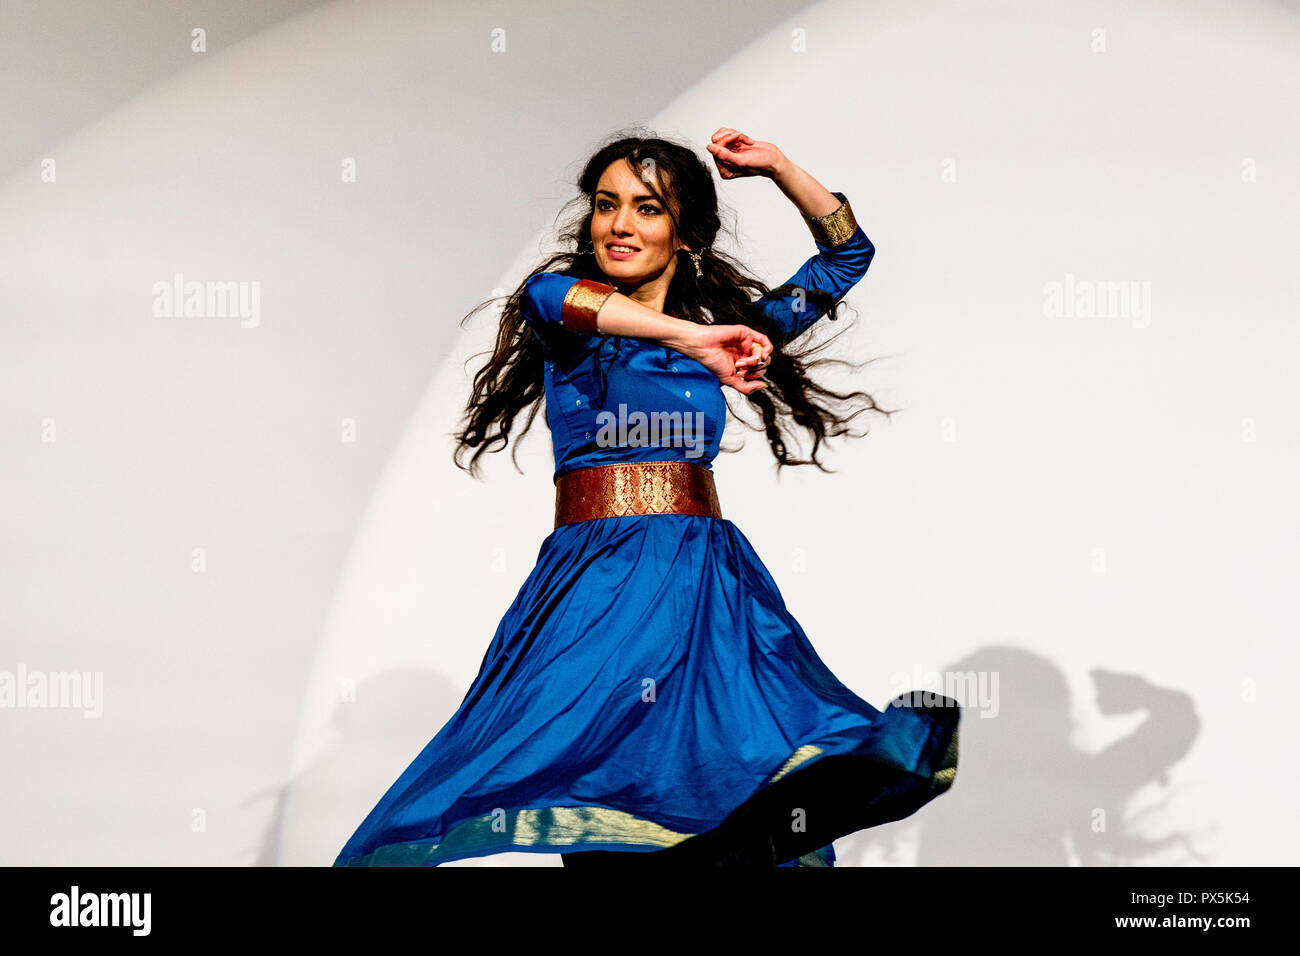 Dancer Kawtar Kel performing in Paris, France. Stock Photo